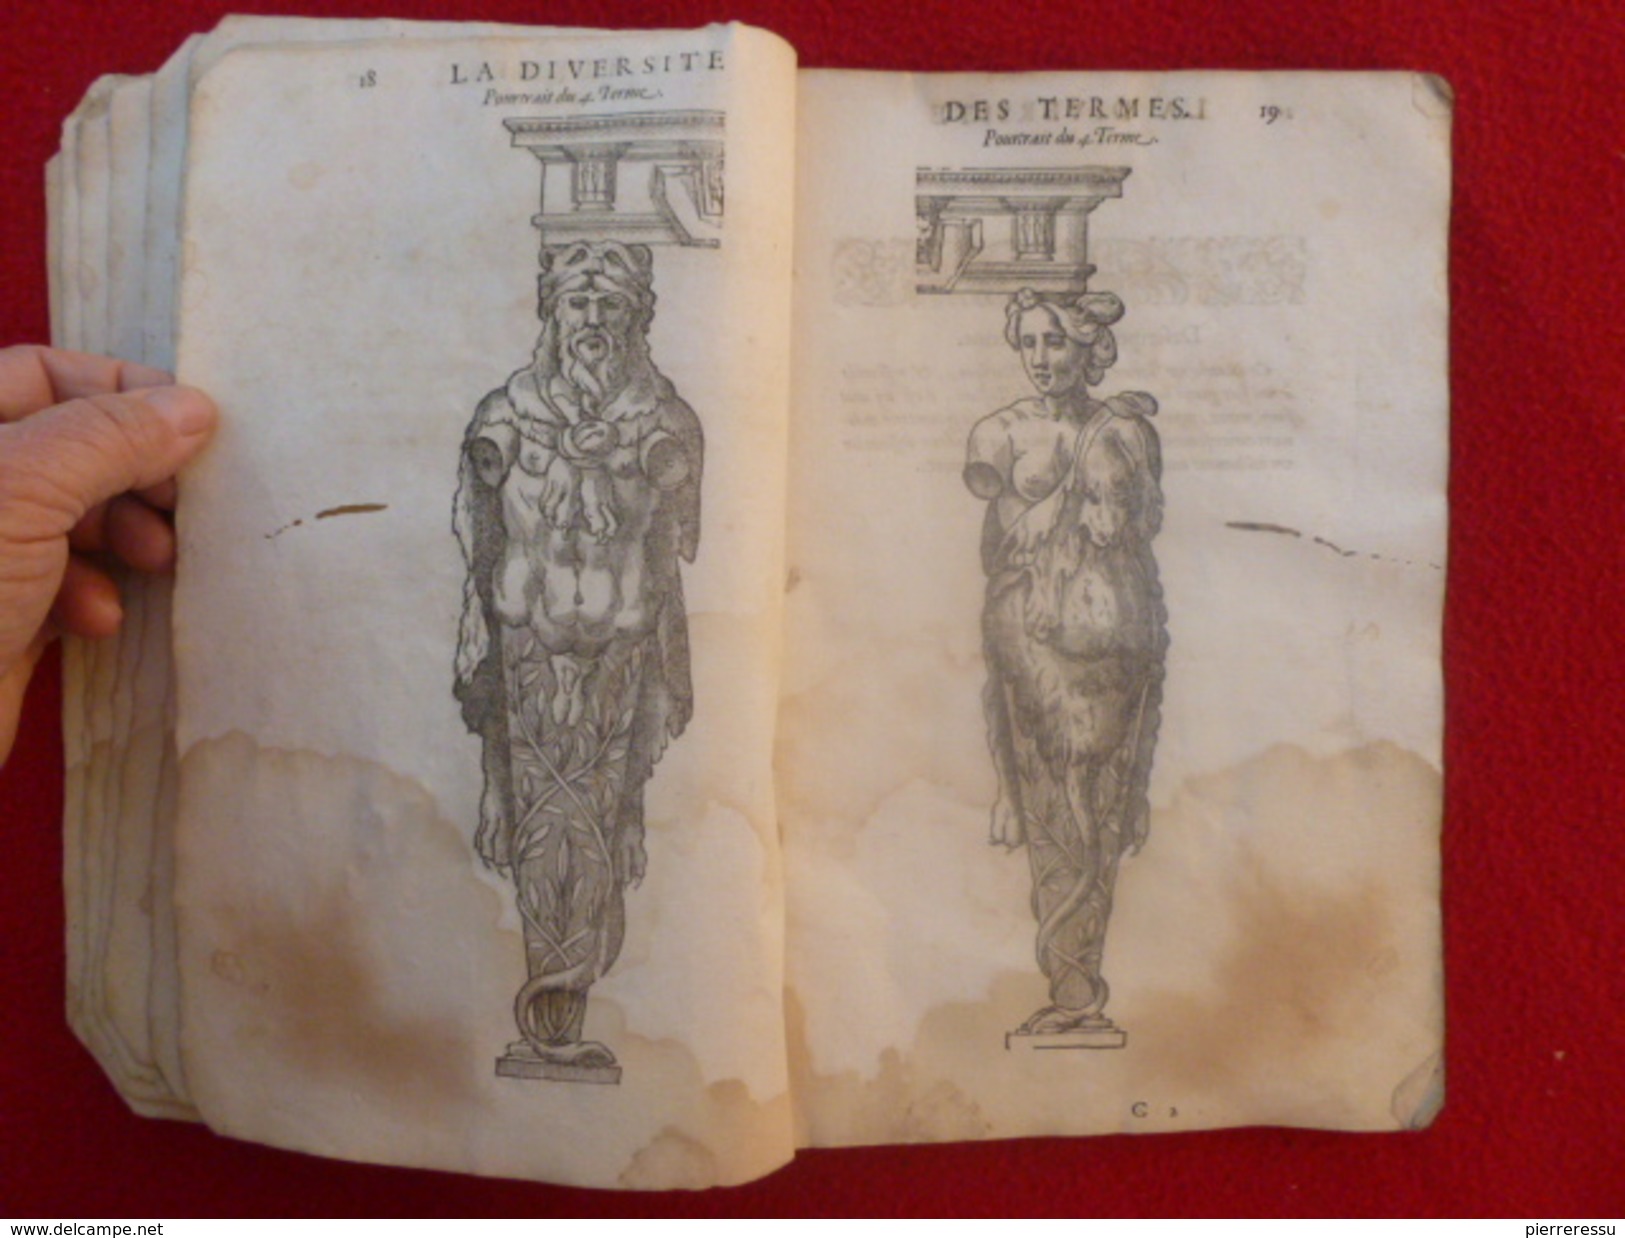 LIVRE JEAN MARCORELLE 1572 HUGUES SAMBIN ARCHITECTE LA DIVERSITE DES TERMES AU SEIGNEUR ELEONOR CHABOT